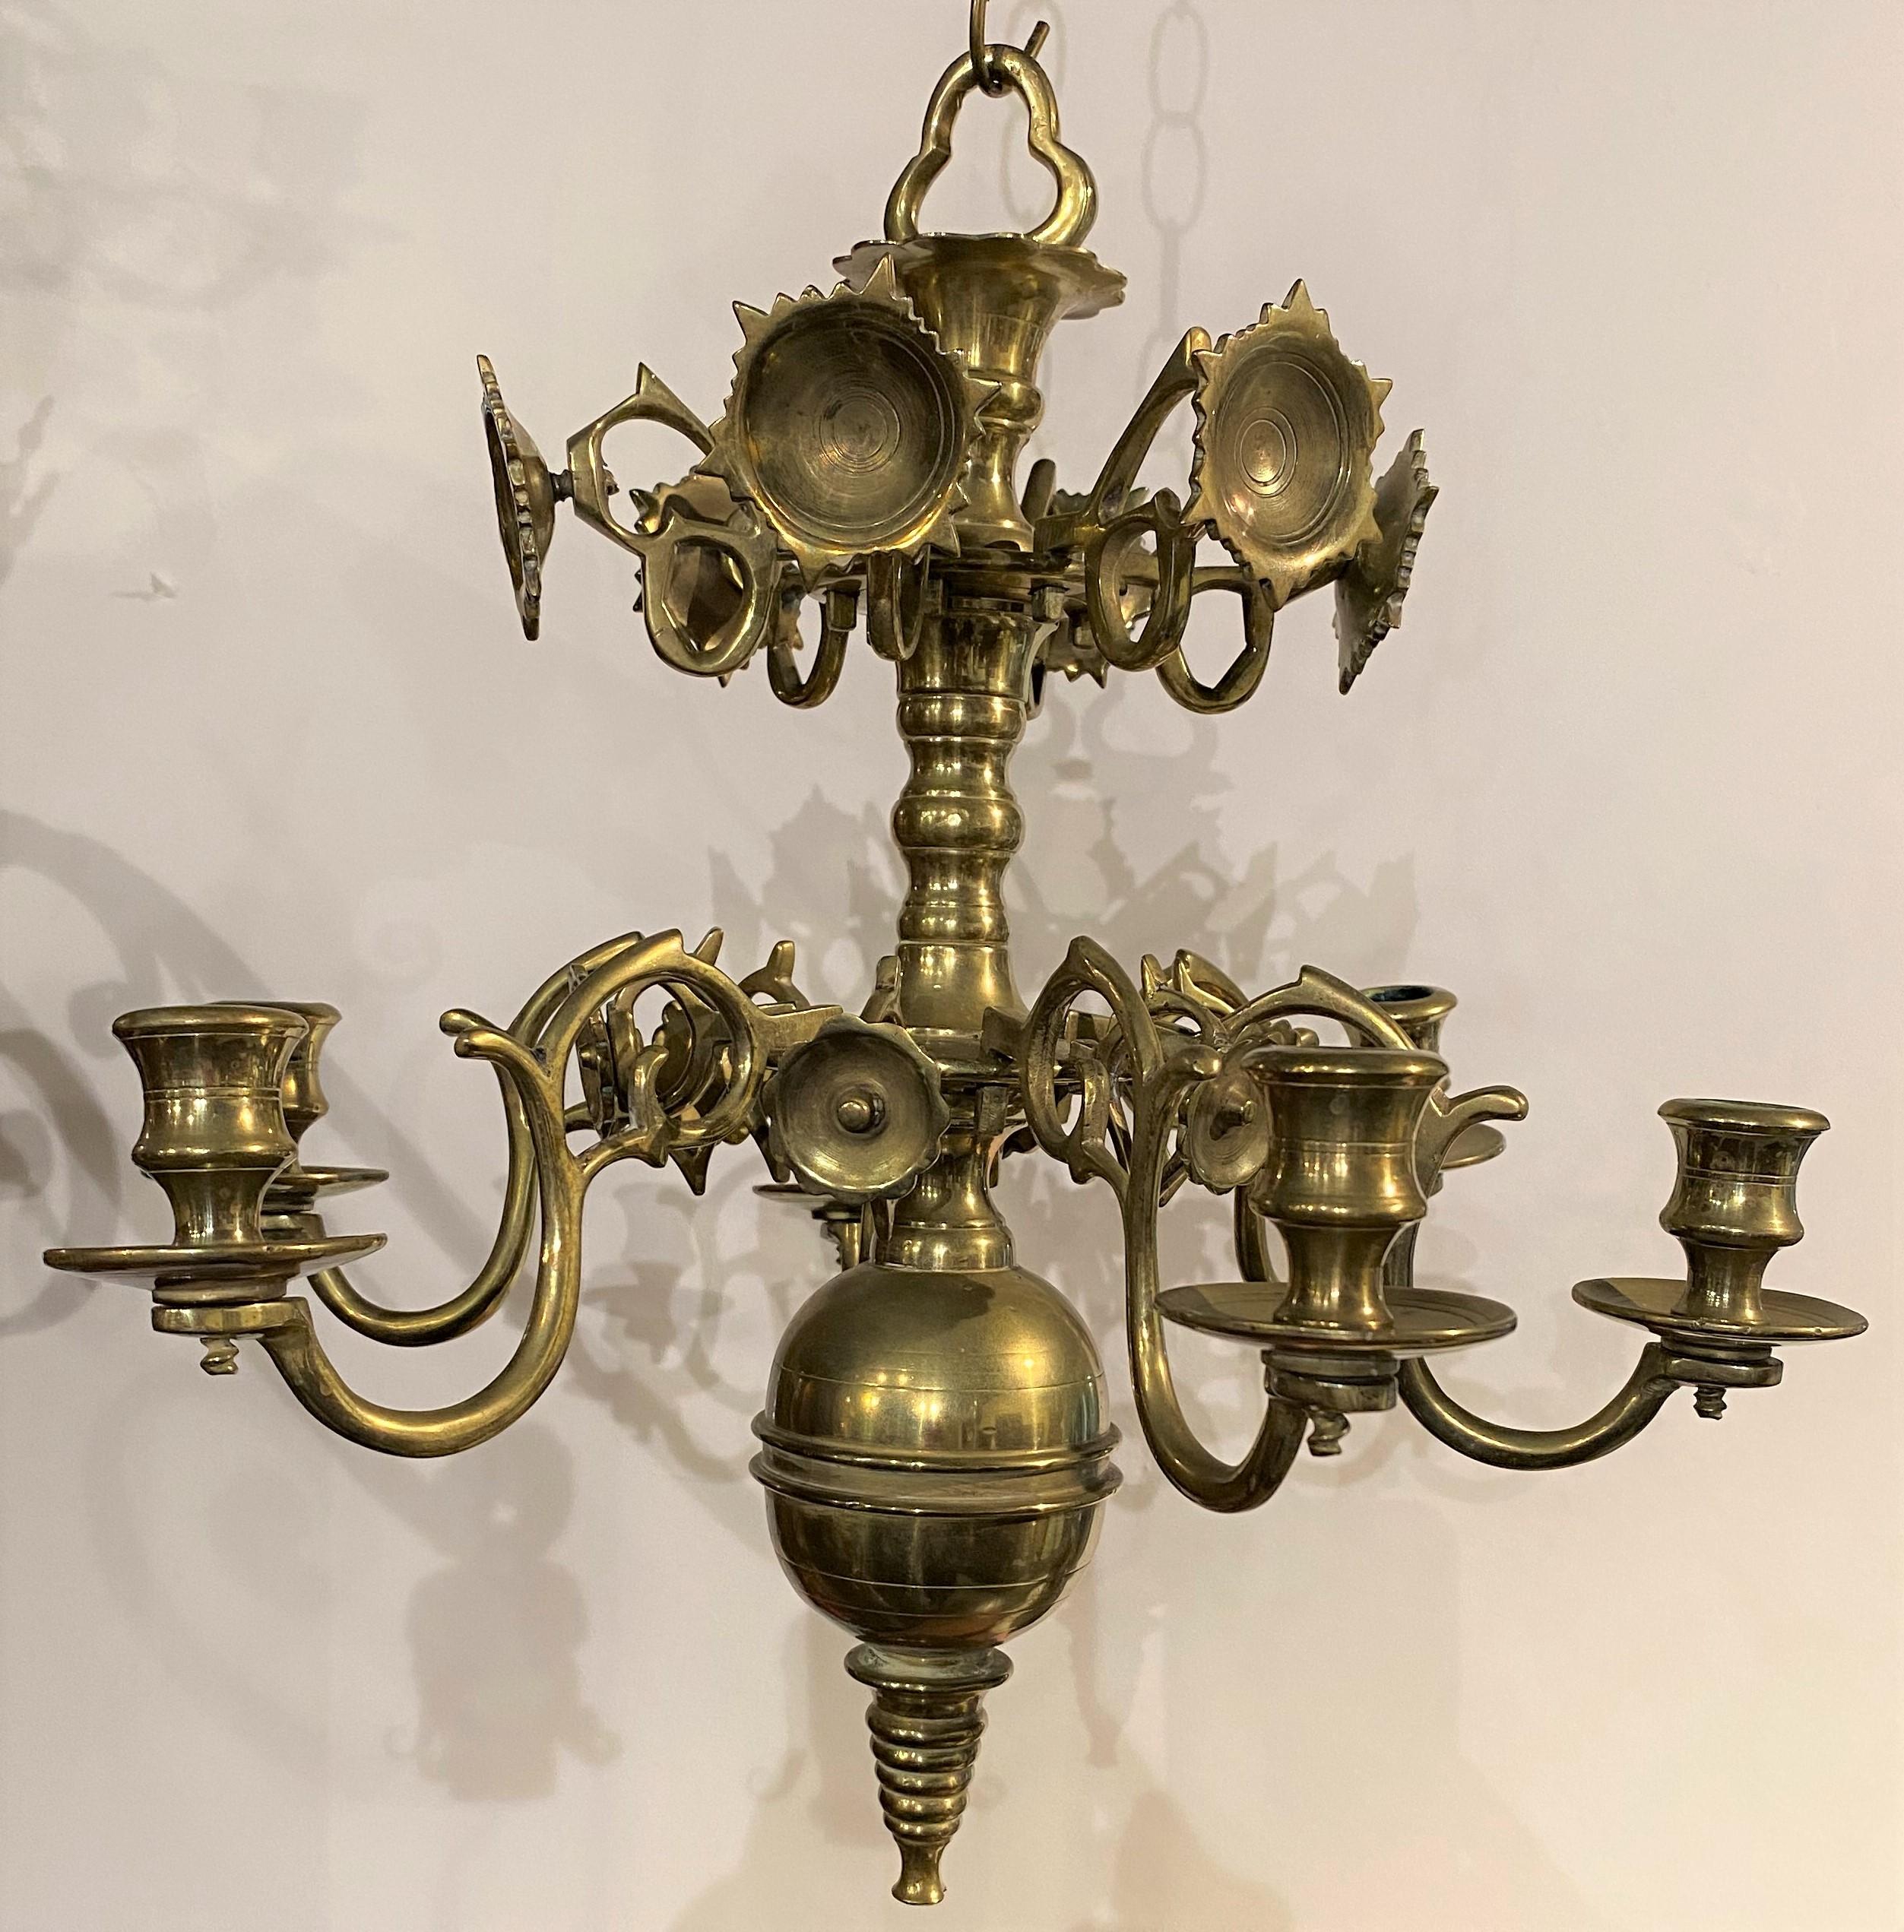 Ein feines Paar holländischer Messingkronleuchter aus dem 18. oder 19. Jahrhundert, jeweils mit zentralem Baluster, an dem sechs Lampen- oder Kerzenarme mit Tropfschalen auf der unteren Etage angebracht sind, mit einem konischen, ringförmigen